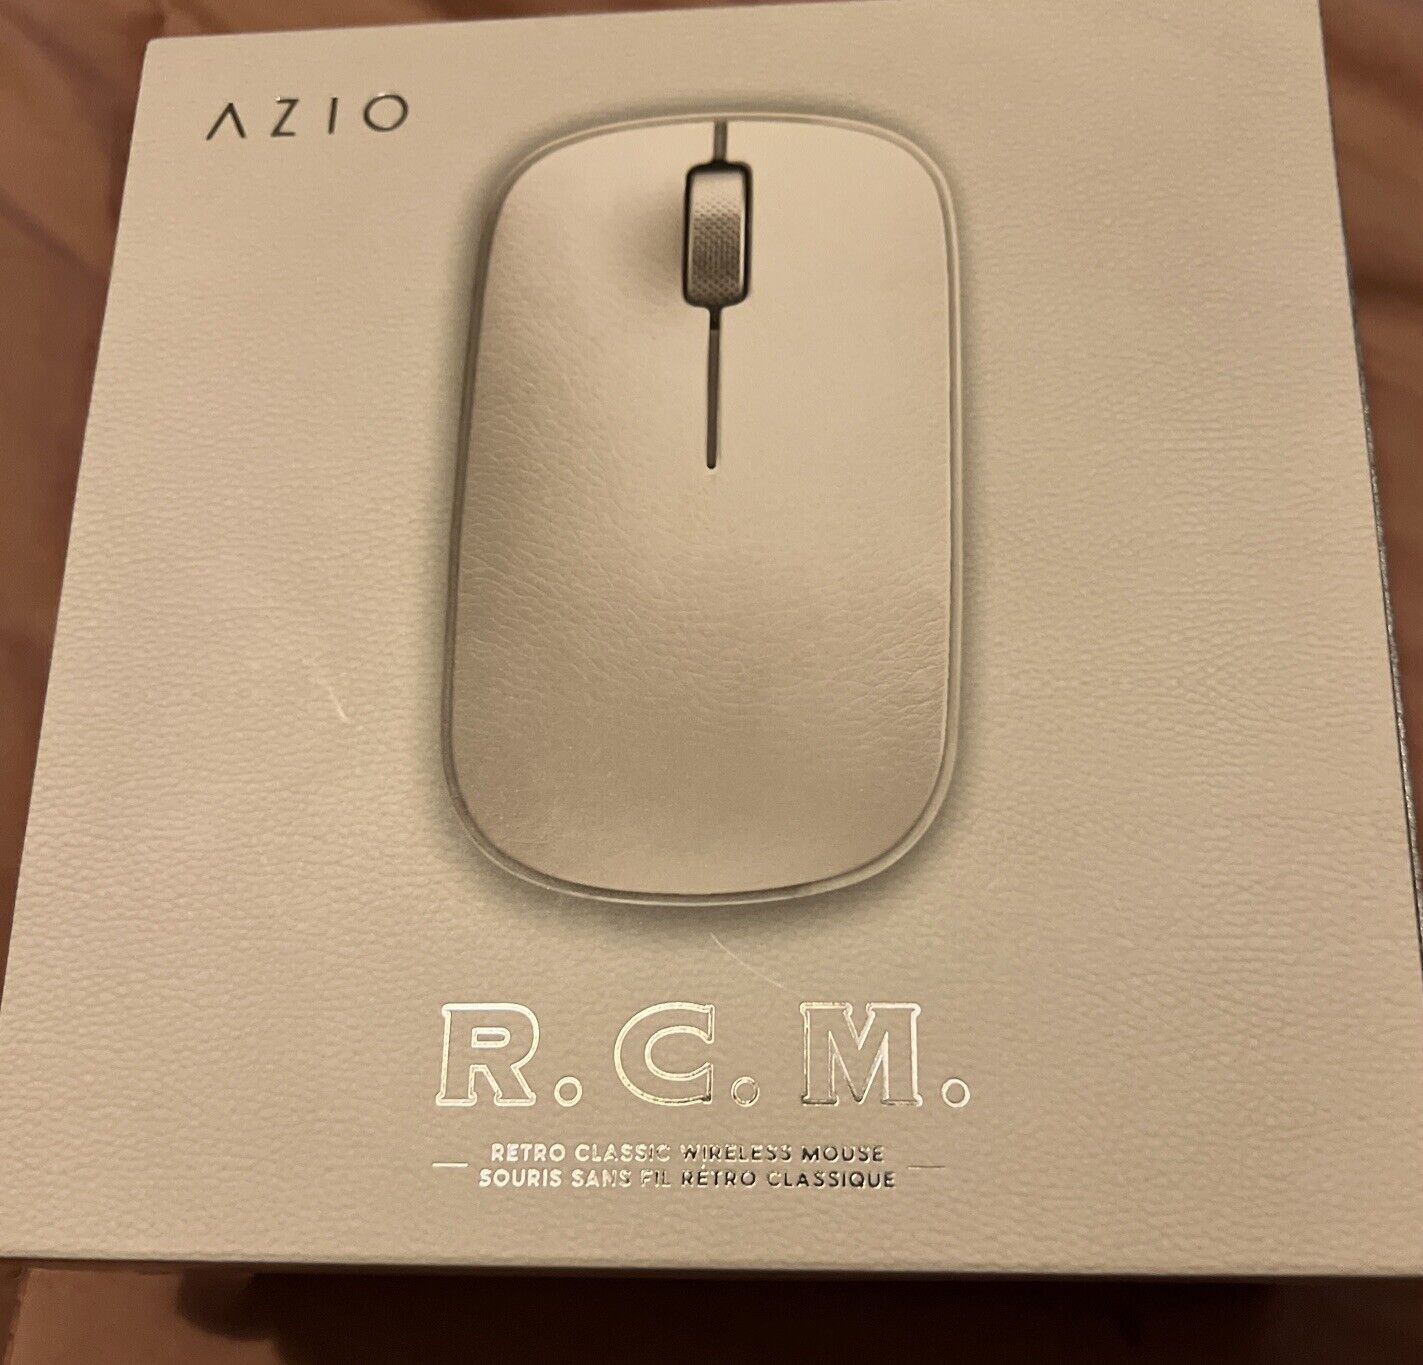 Azio Retro Classic Bluetooth Mouse (Maple) - Wireless, Genuine Leather Maple 